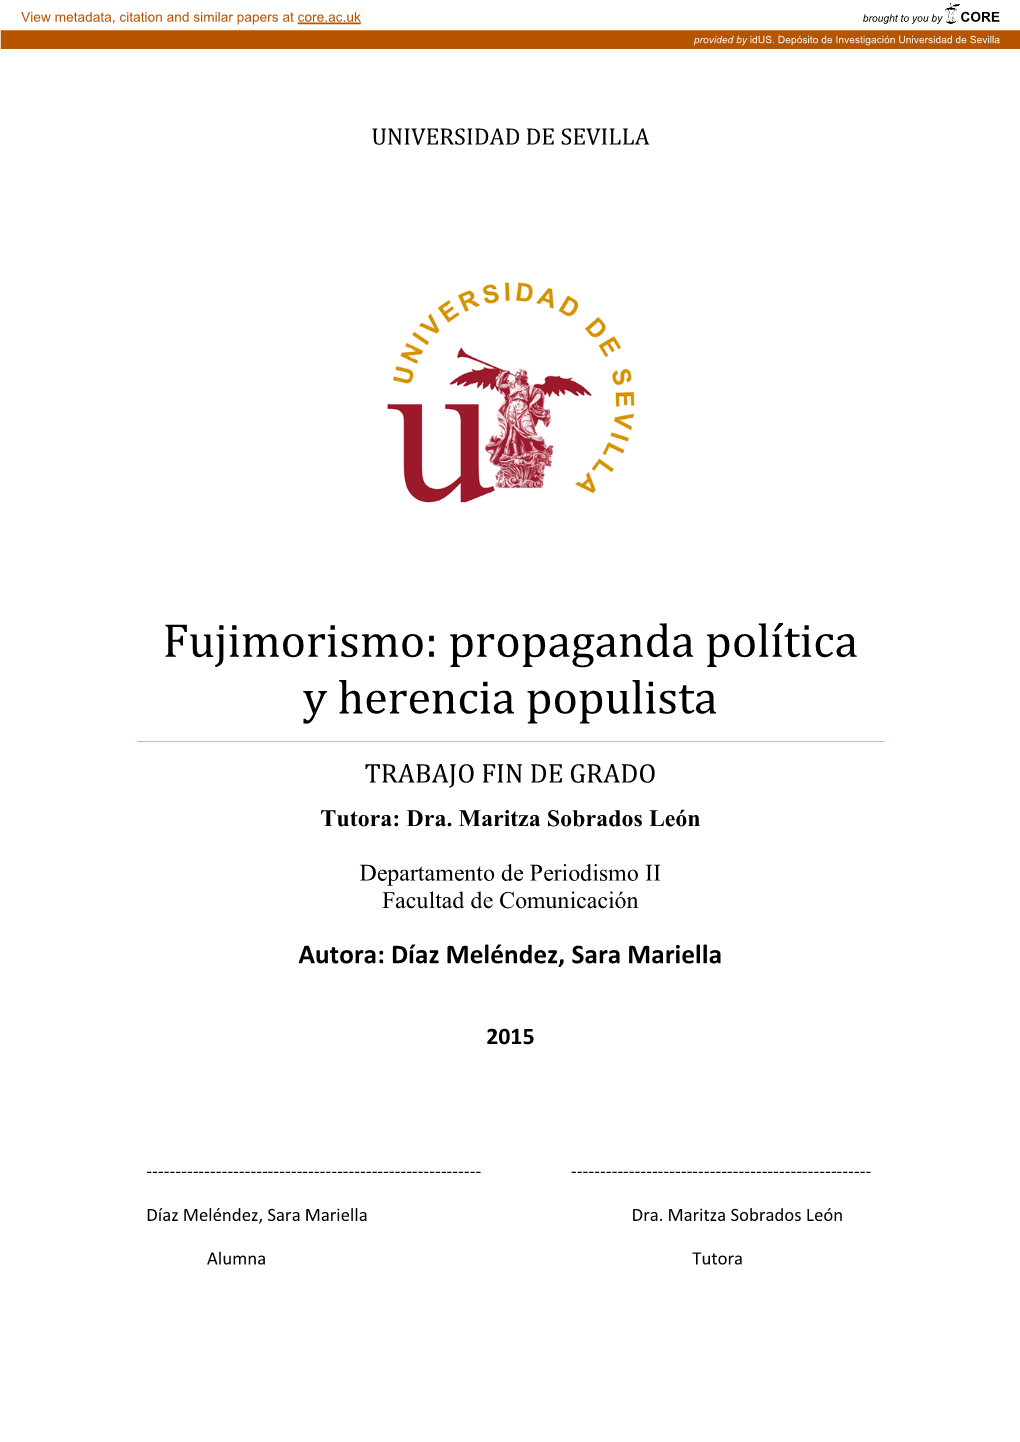 Fujimorismo: Propaganda Política Y Herencia Populista